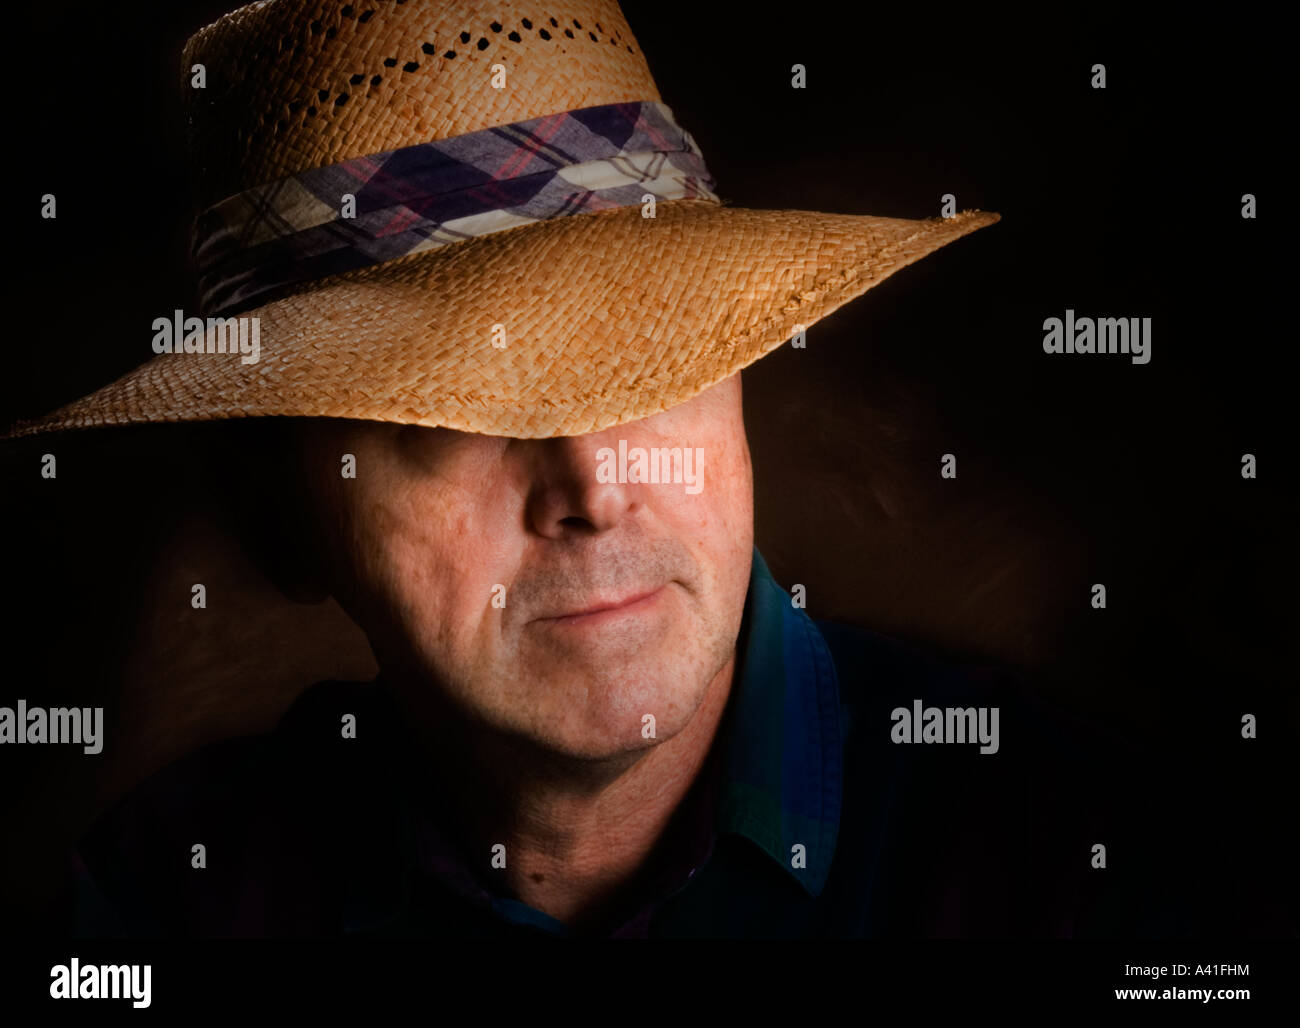 Porträt eines Mannes in einem Strohhut, der einen karierten Hutband hat Stockfoto